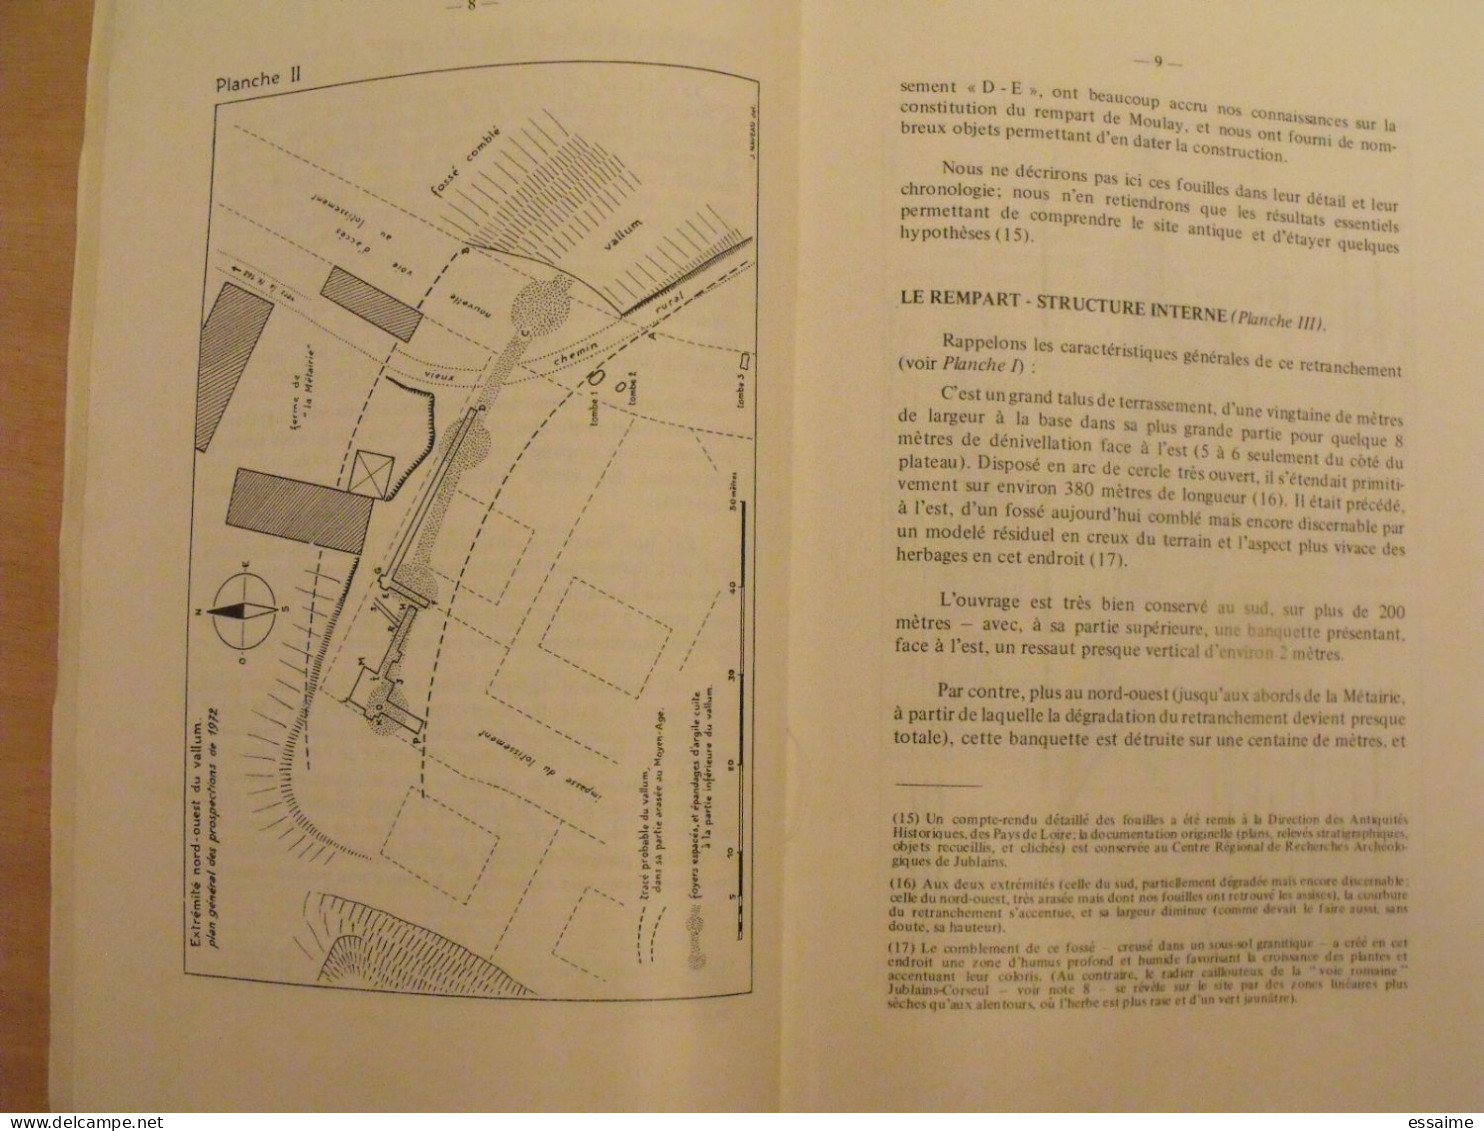 bulletin historique et archéologique de la Mayenne. 1972, n° 29 (243) . Laval Chateau-Gontier. Goupil.